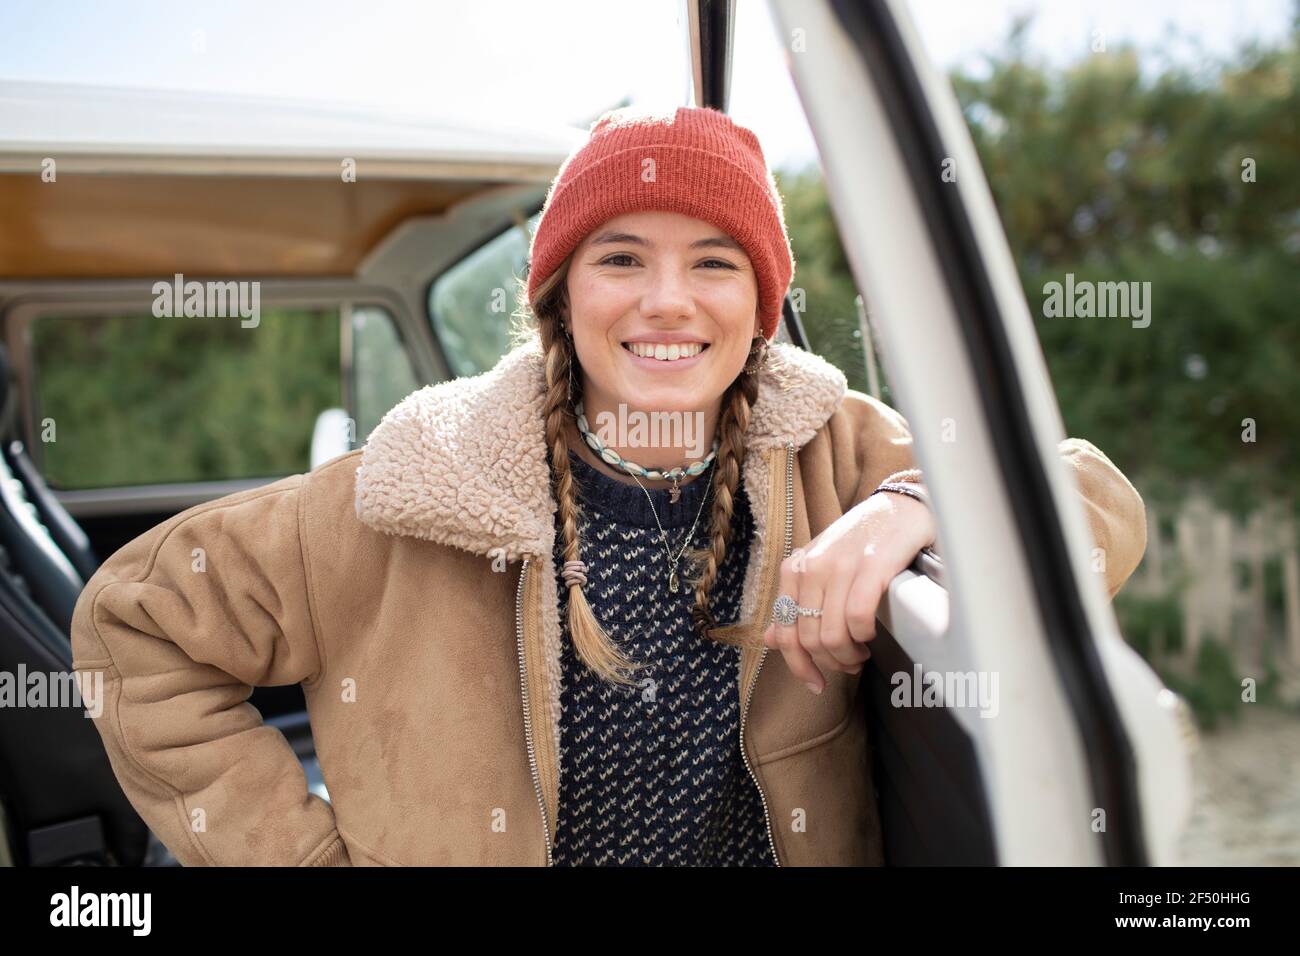 Portrait happy young woman in knit hat at camper van doorway Stock Photo